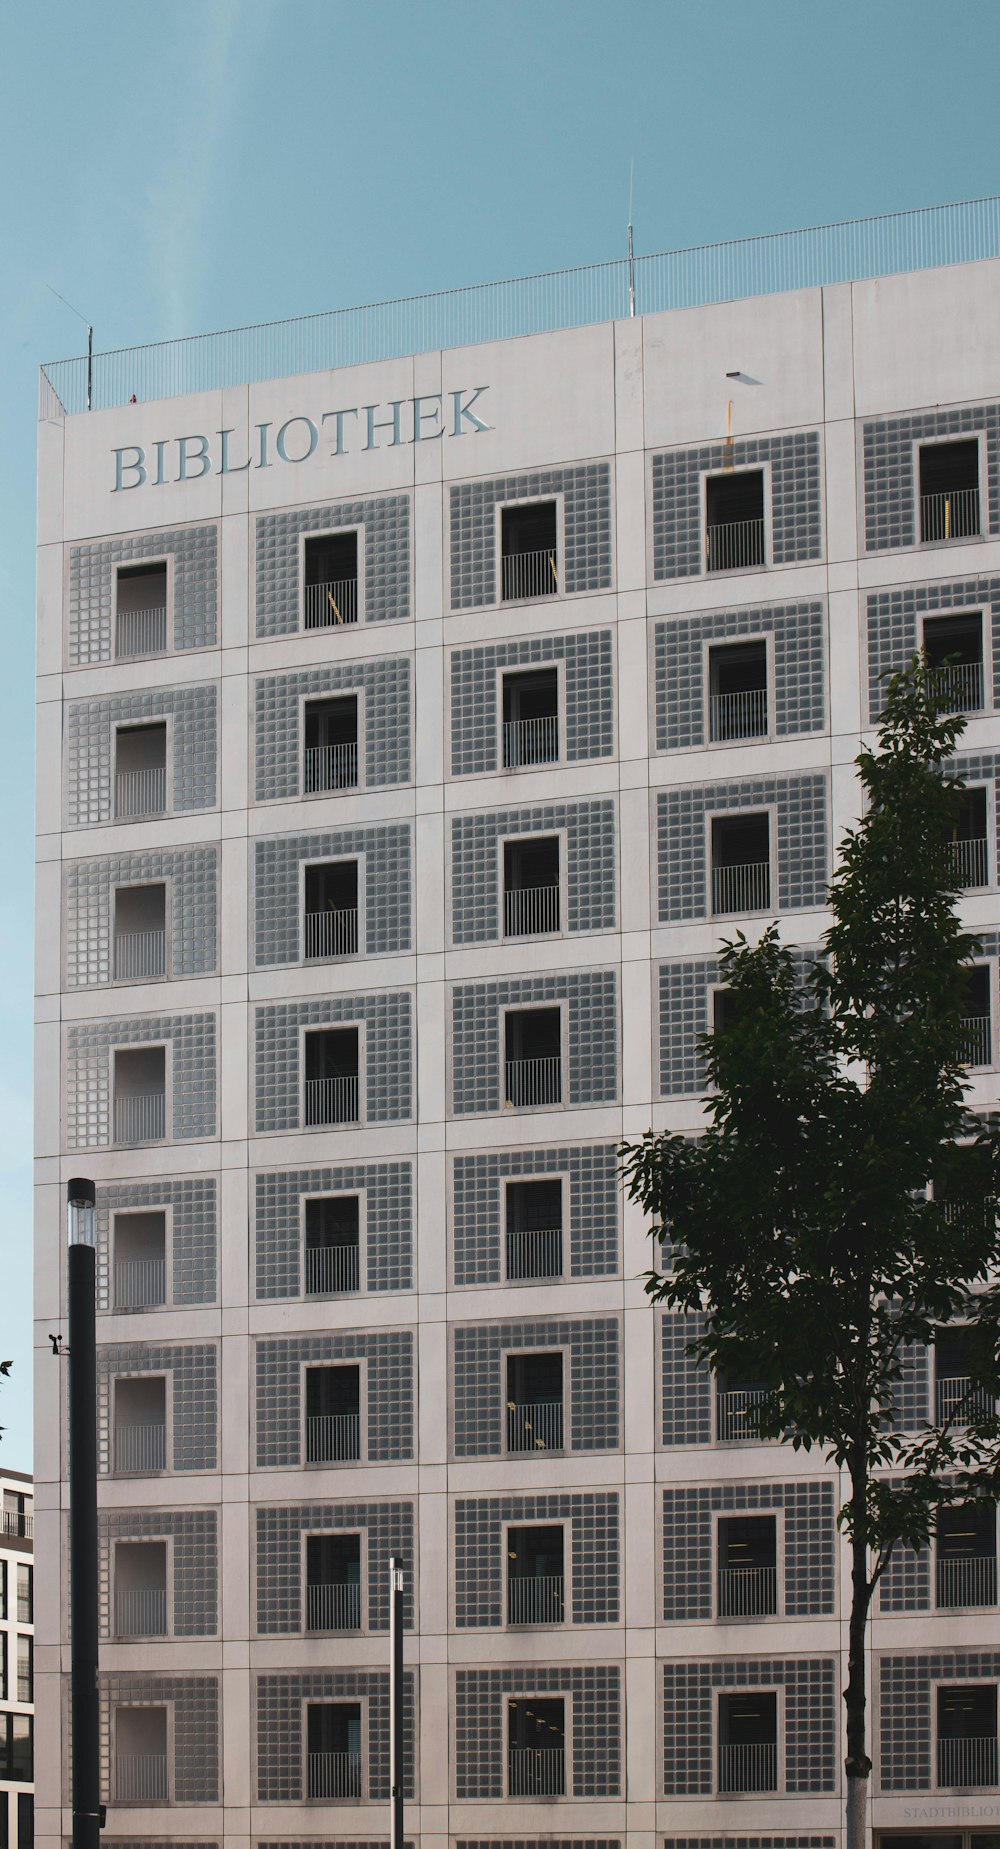 Foto do edifício Bibliothek